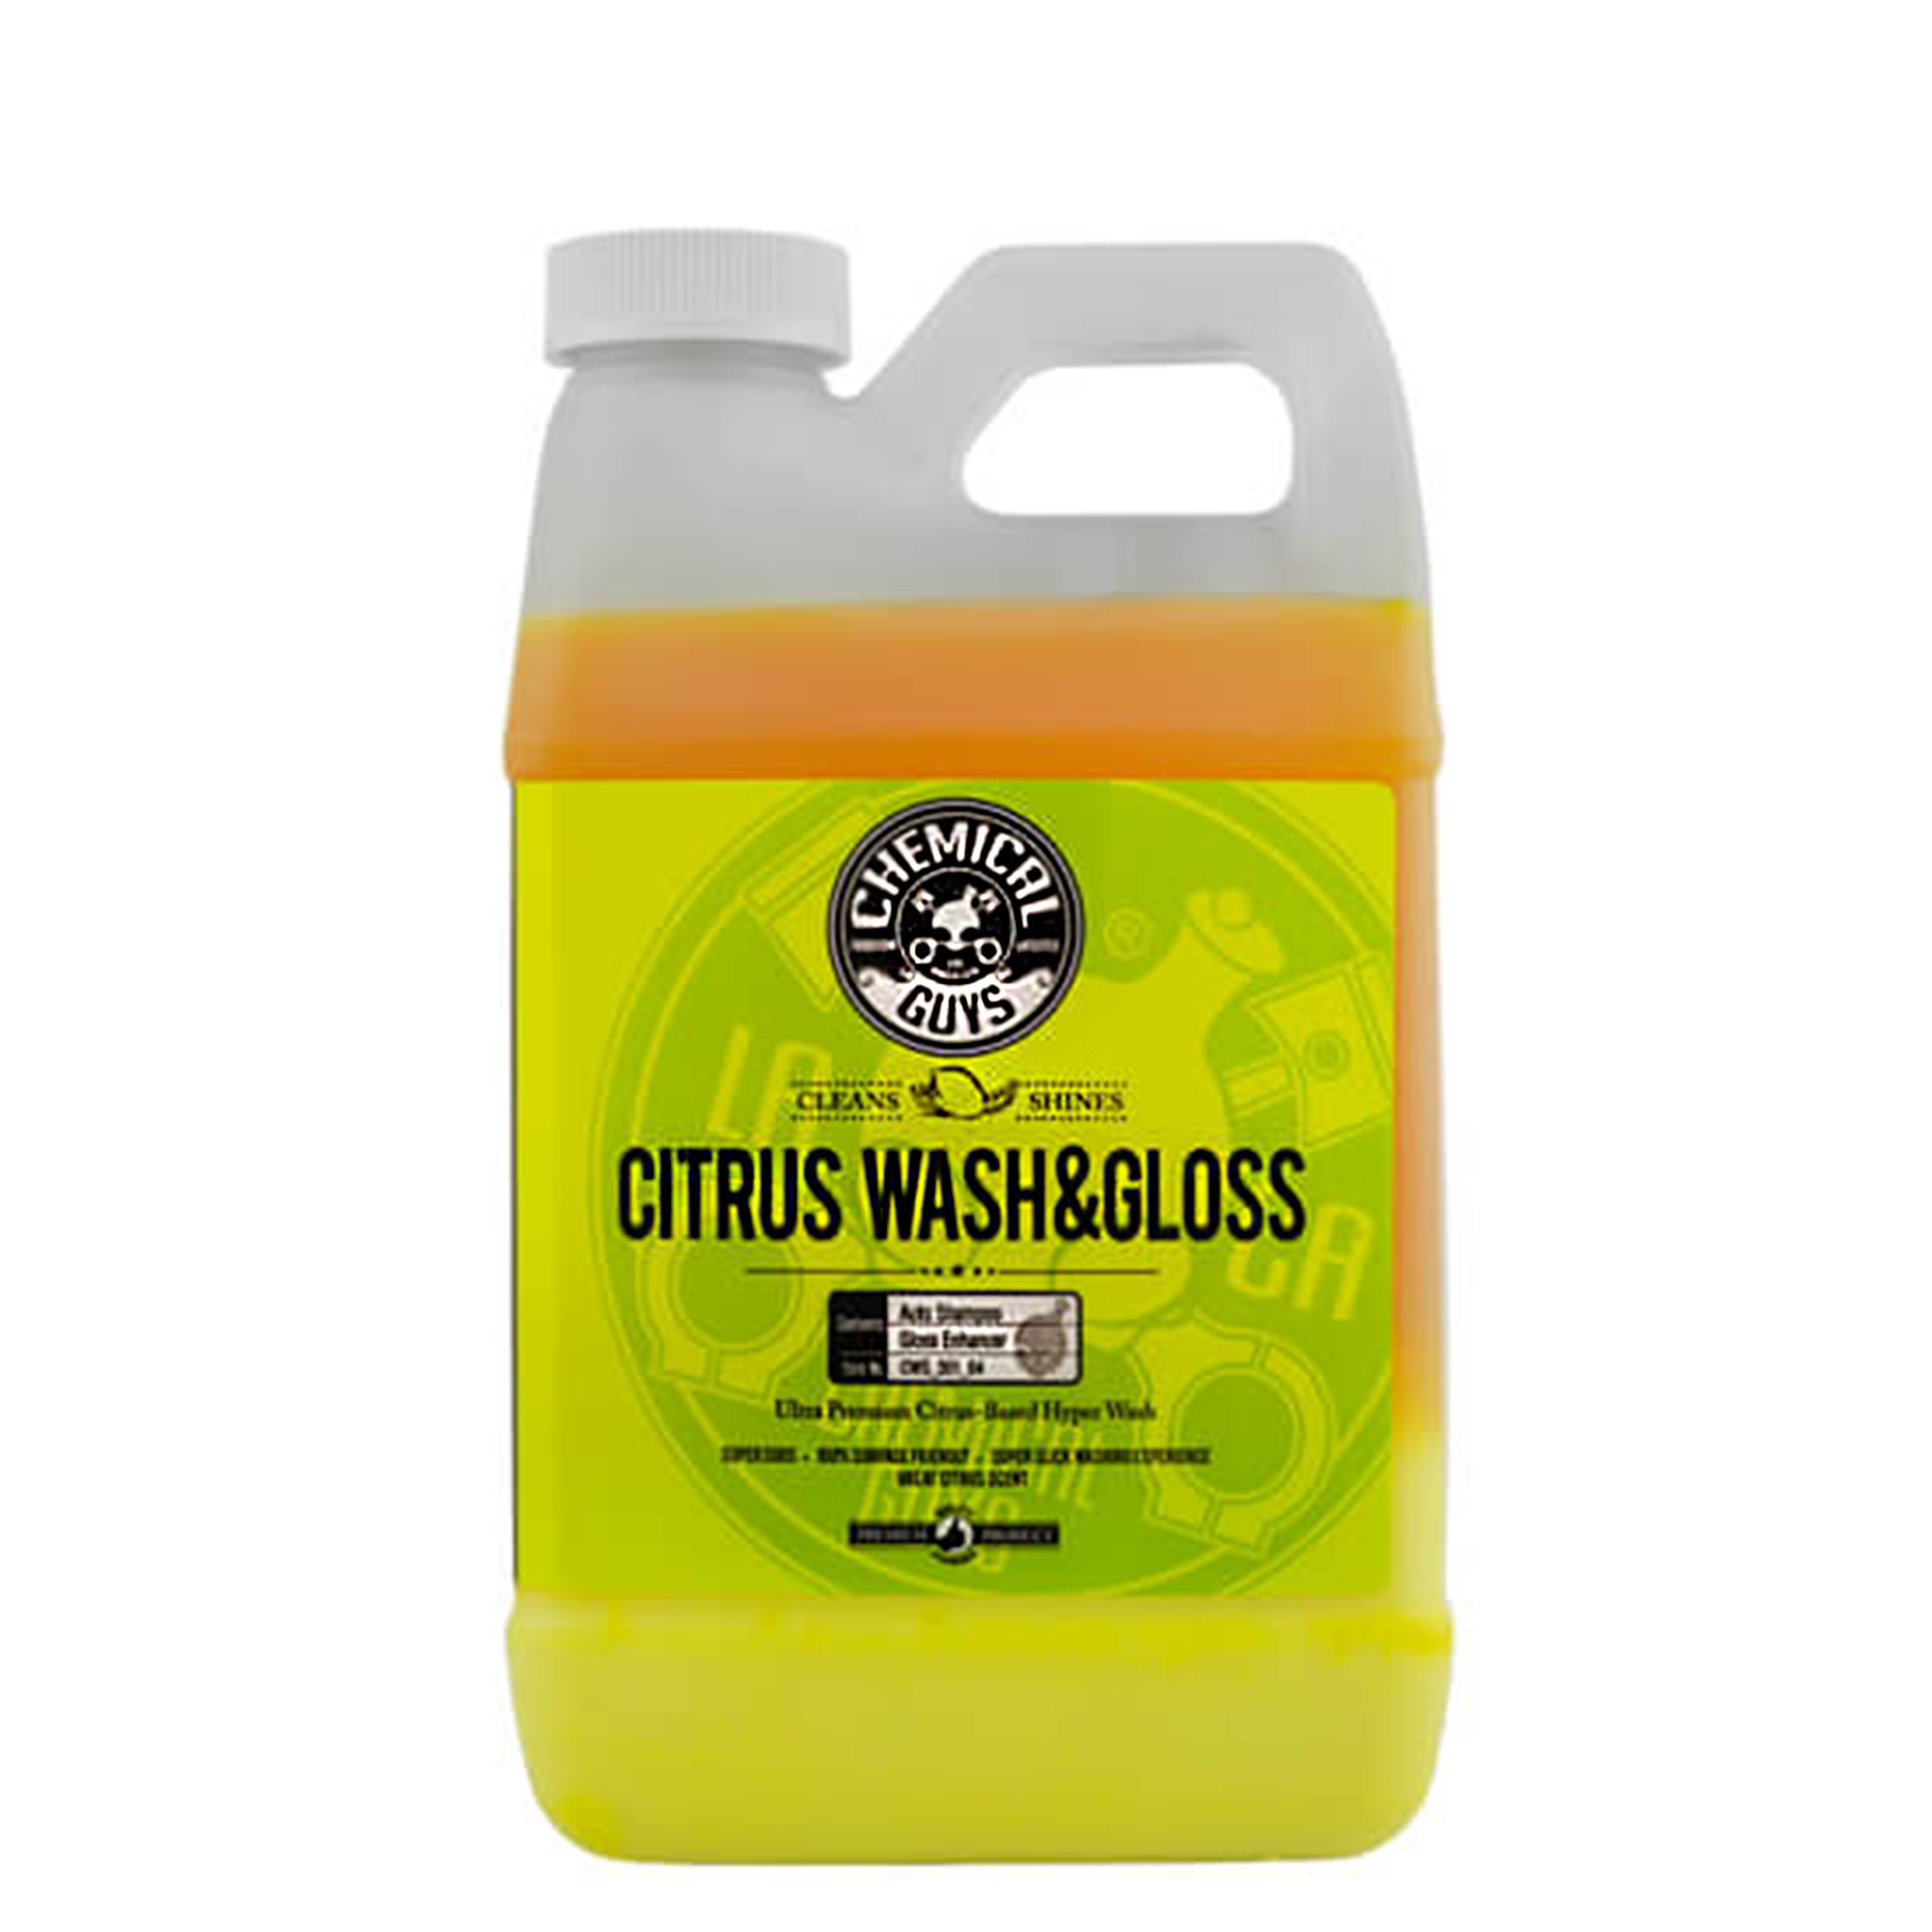 Voksshampo Chemical Guys Citrus Wash & Gloss, 3785 ml